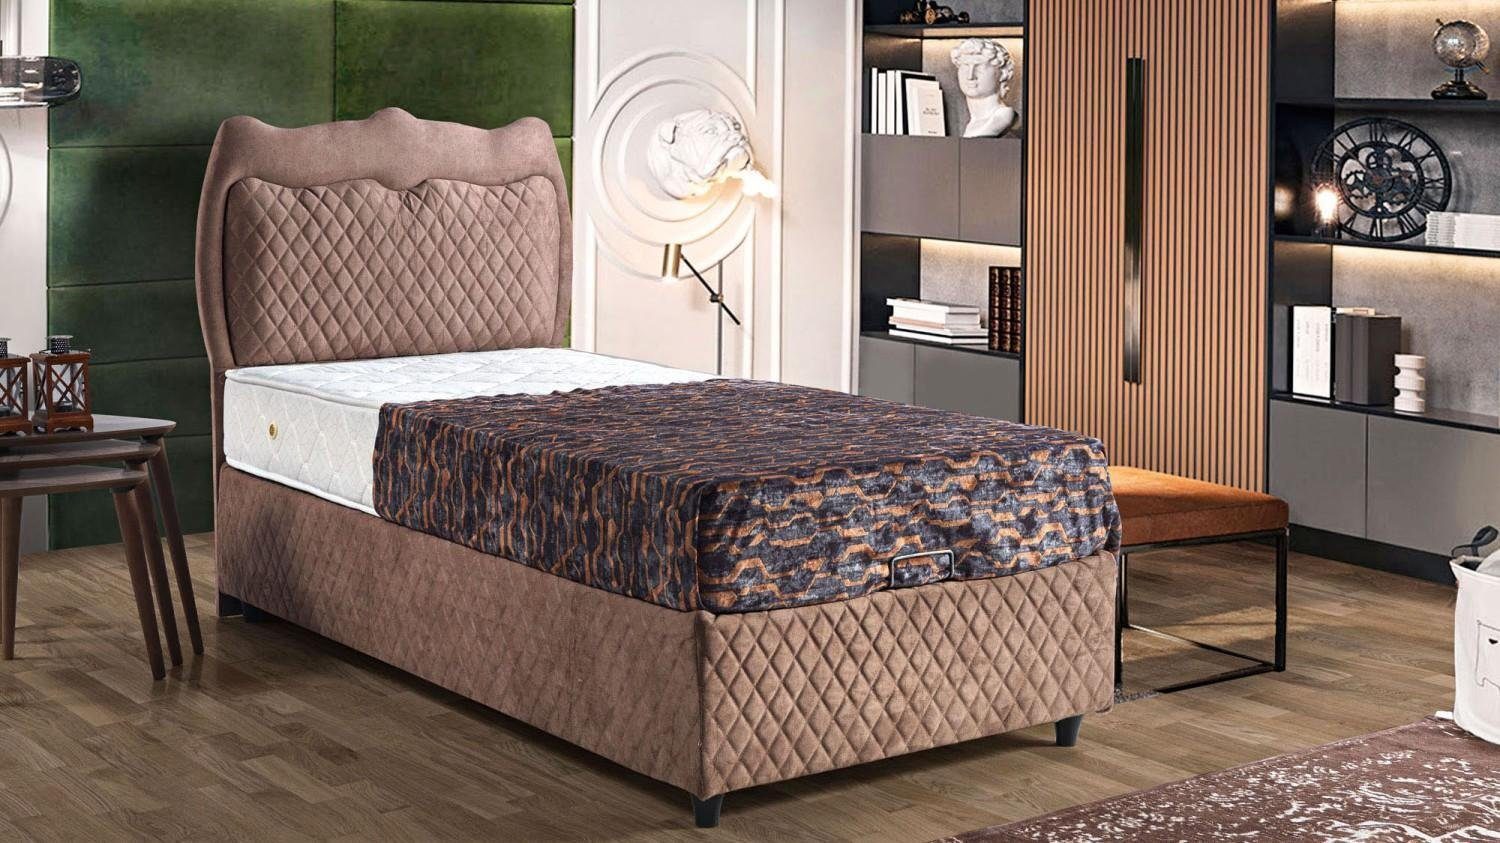 JVmoebel Bett Bett Design Betten Luxus Betten Polster Schlafzimmer Möbel Braun (Bett), Made In Europe